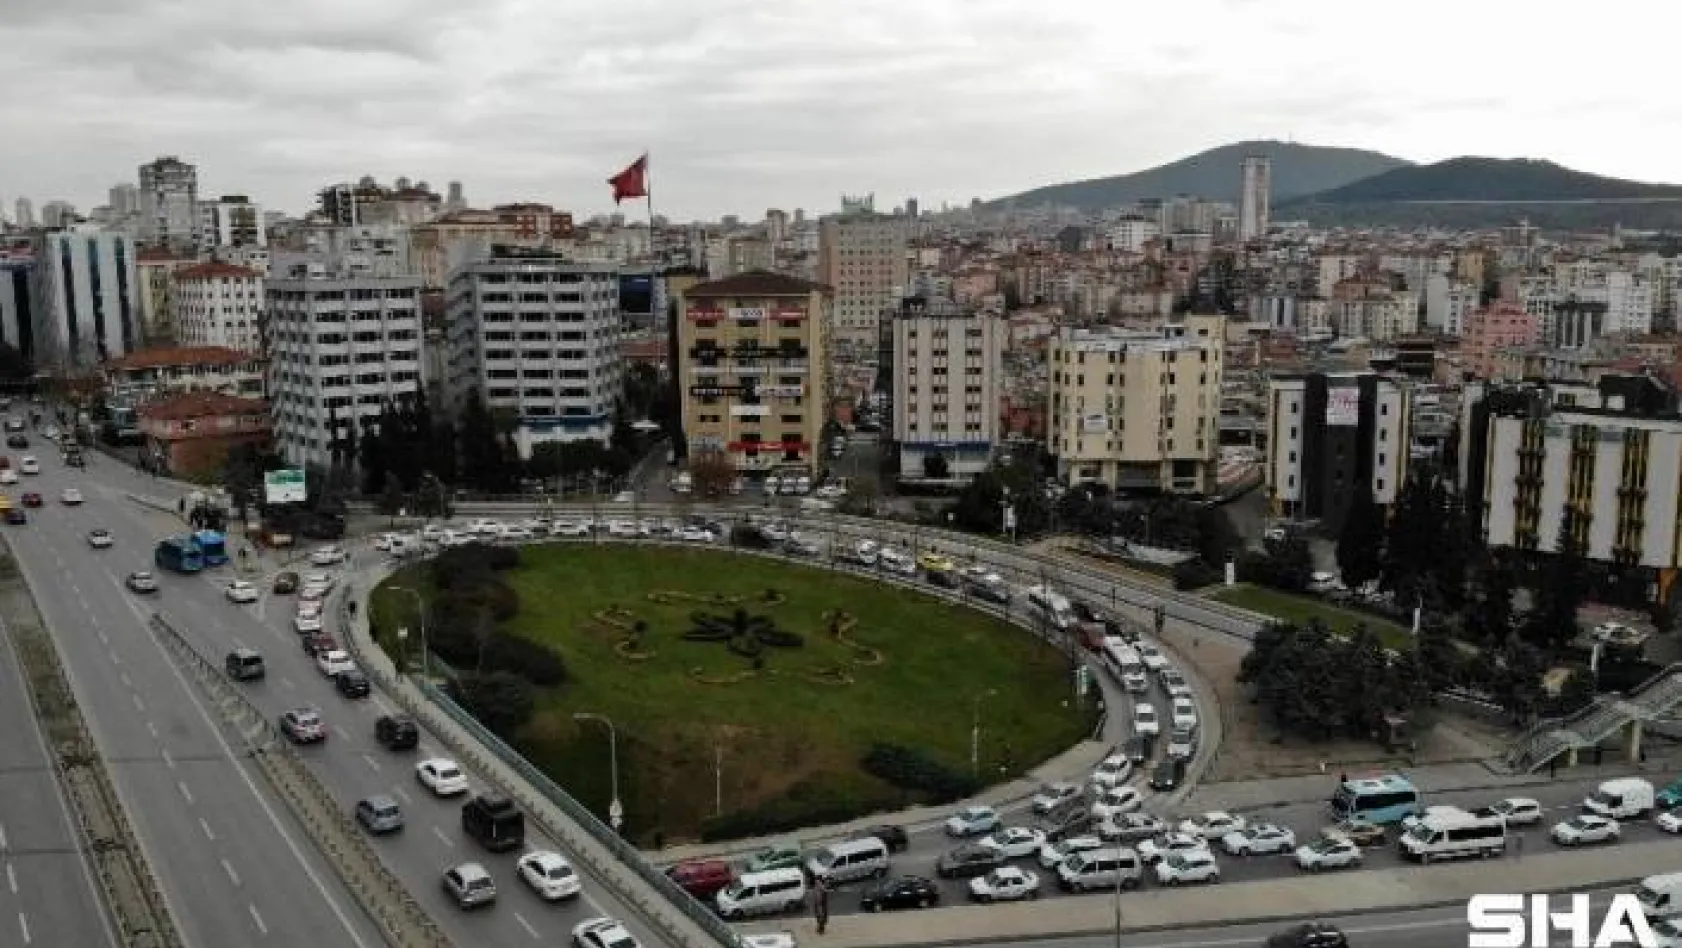 Kadıköy'de şüpheli çanta polisi alarma geçirdi: Trafik felç oldu